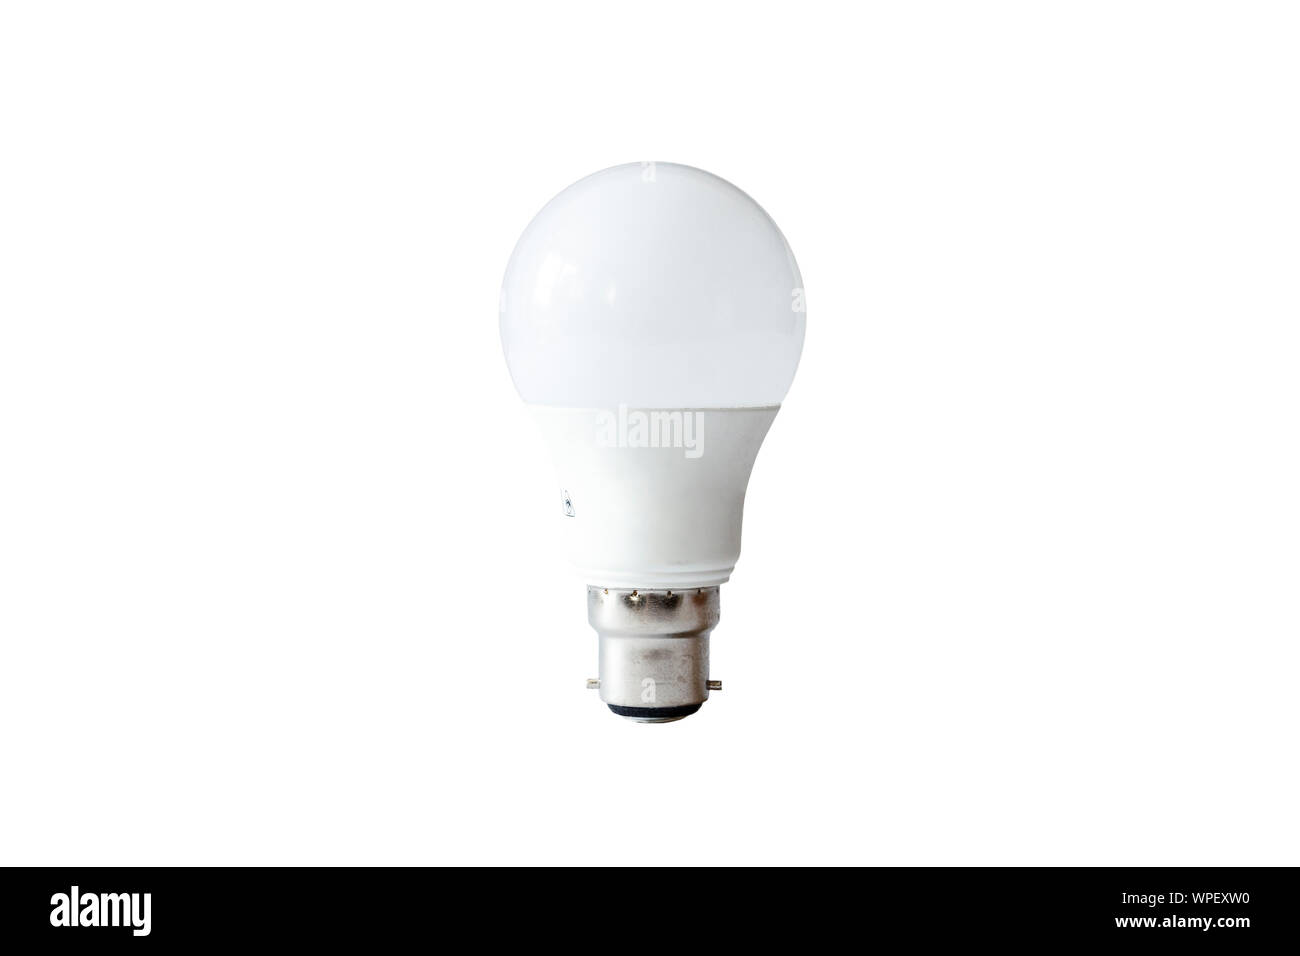 Un risparmio energetico tradizionalmente a forma di luce LED lampadina con raccordo a baionetta, isolata contro uno sfondo bianco Foto Stock